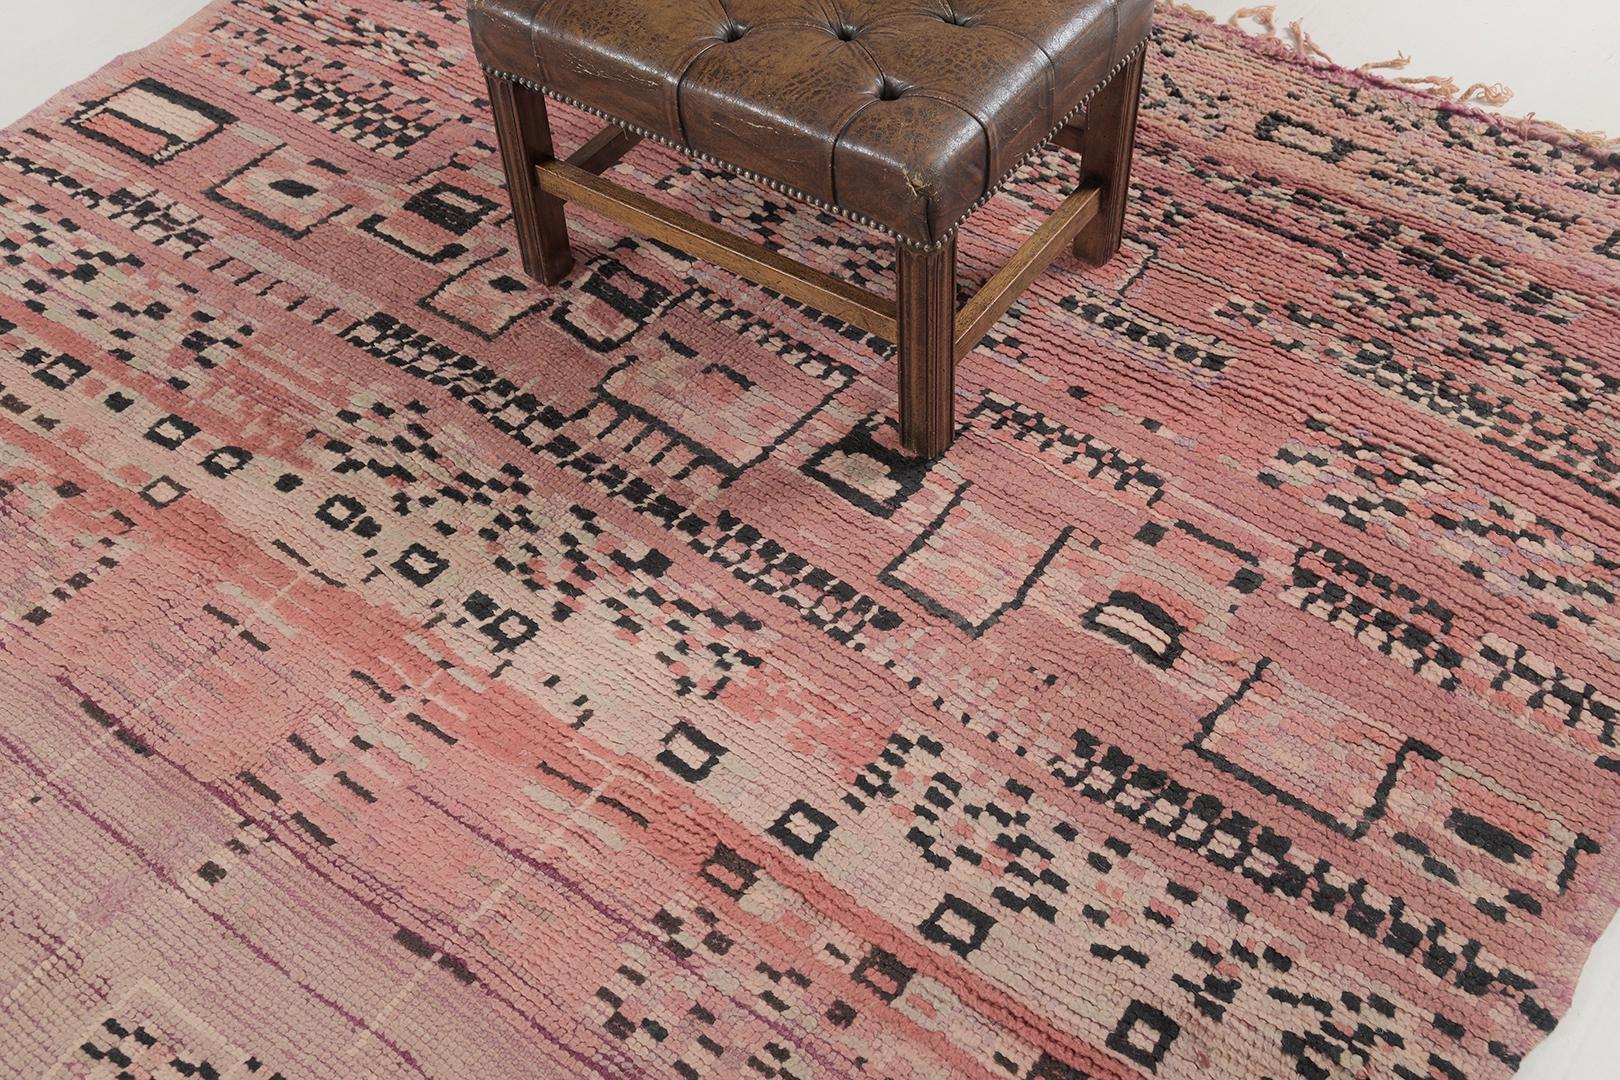 Lassen Sie sie staunen und neugierig sein auf die Geschichte dieses erstaunlichen marokkanischen Beni M'Guild-Teppichs. Seine Bequemlichkeit und die angenehme Pastellfarbe können die Aufmerksamkeit auf jedes Detail dieses Designs lenken. Diese